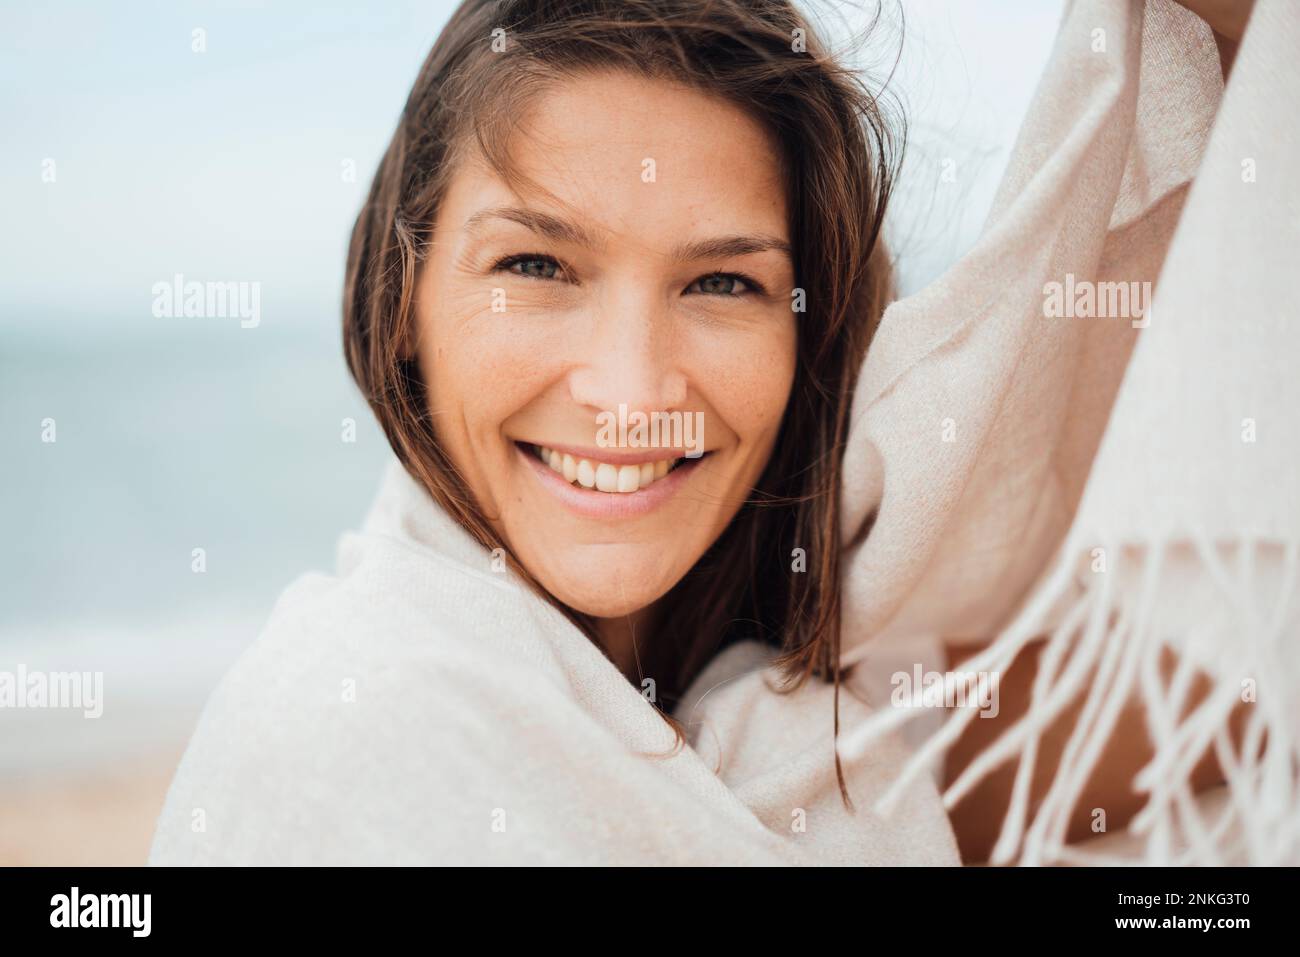 Une femme heureuse avec un sourire éclatant Banque D'Images